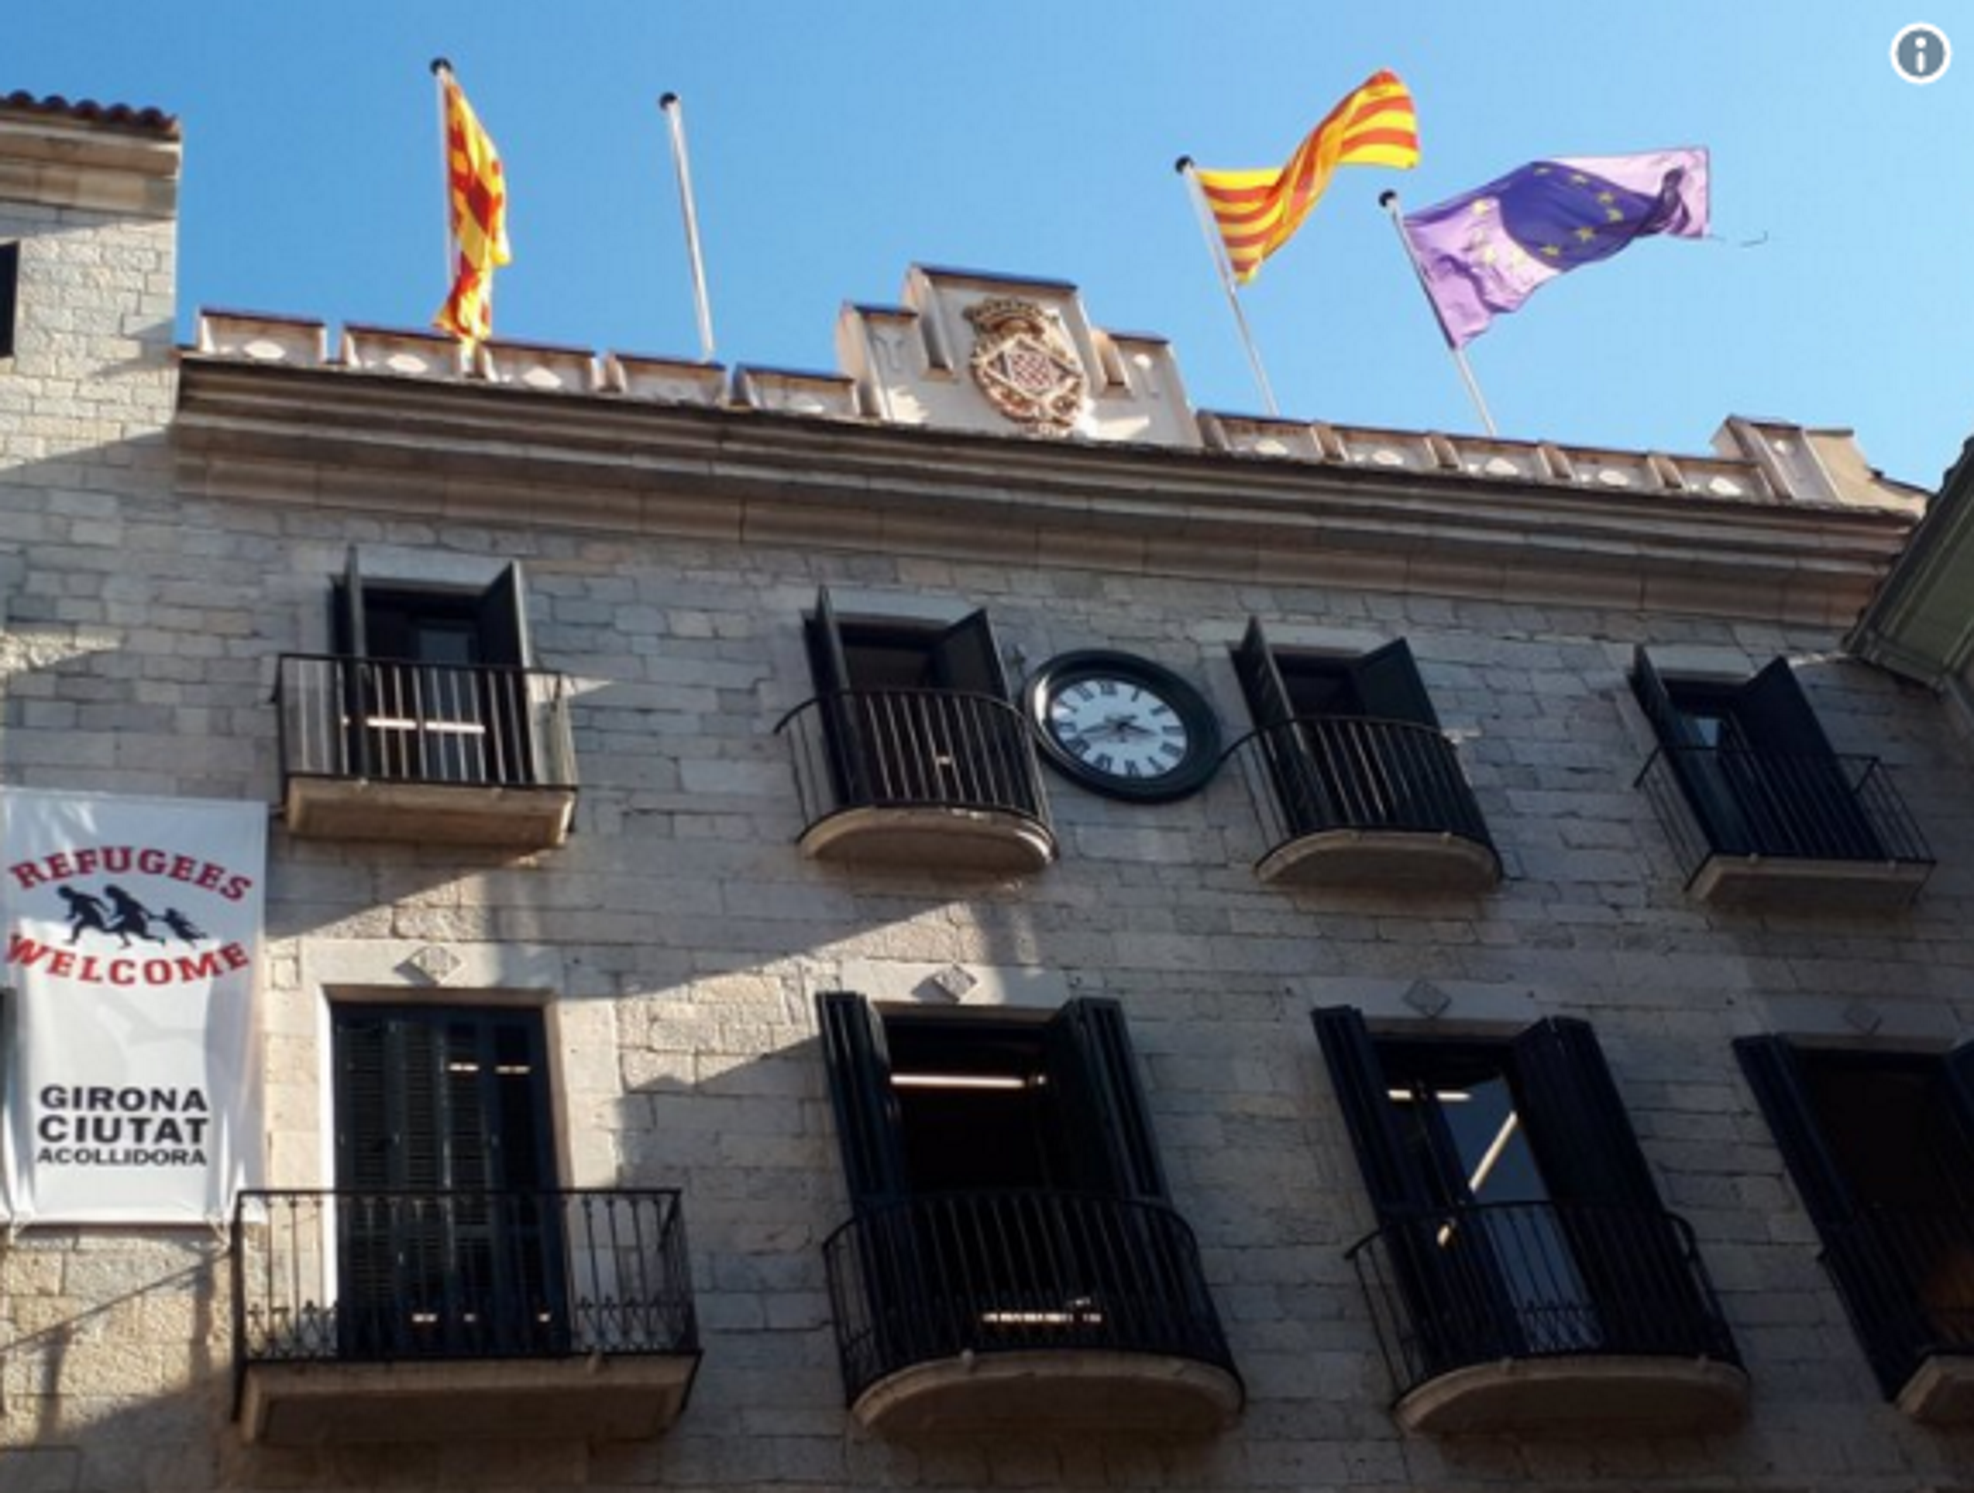 Girona retira la bandera española